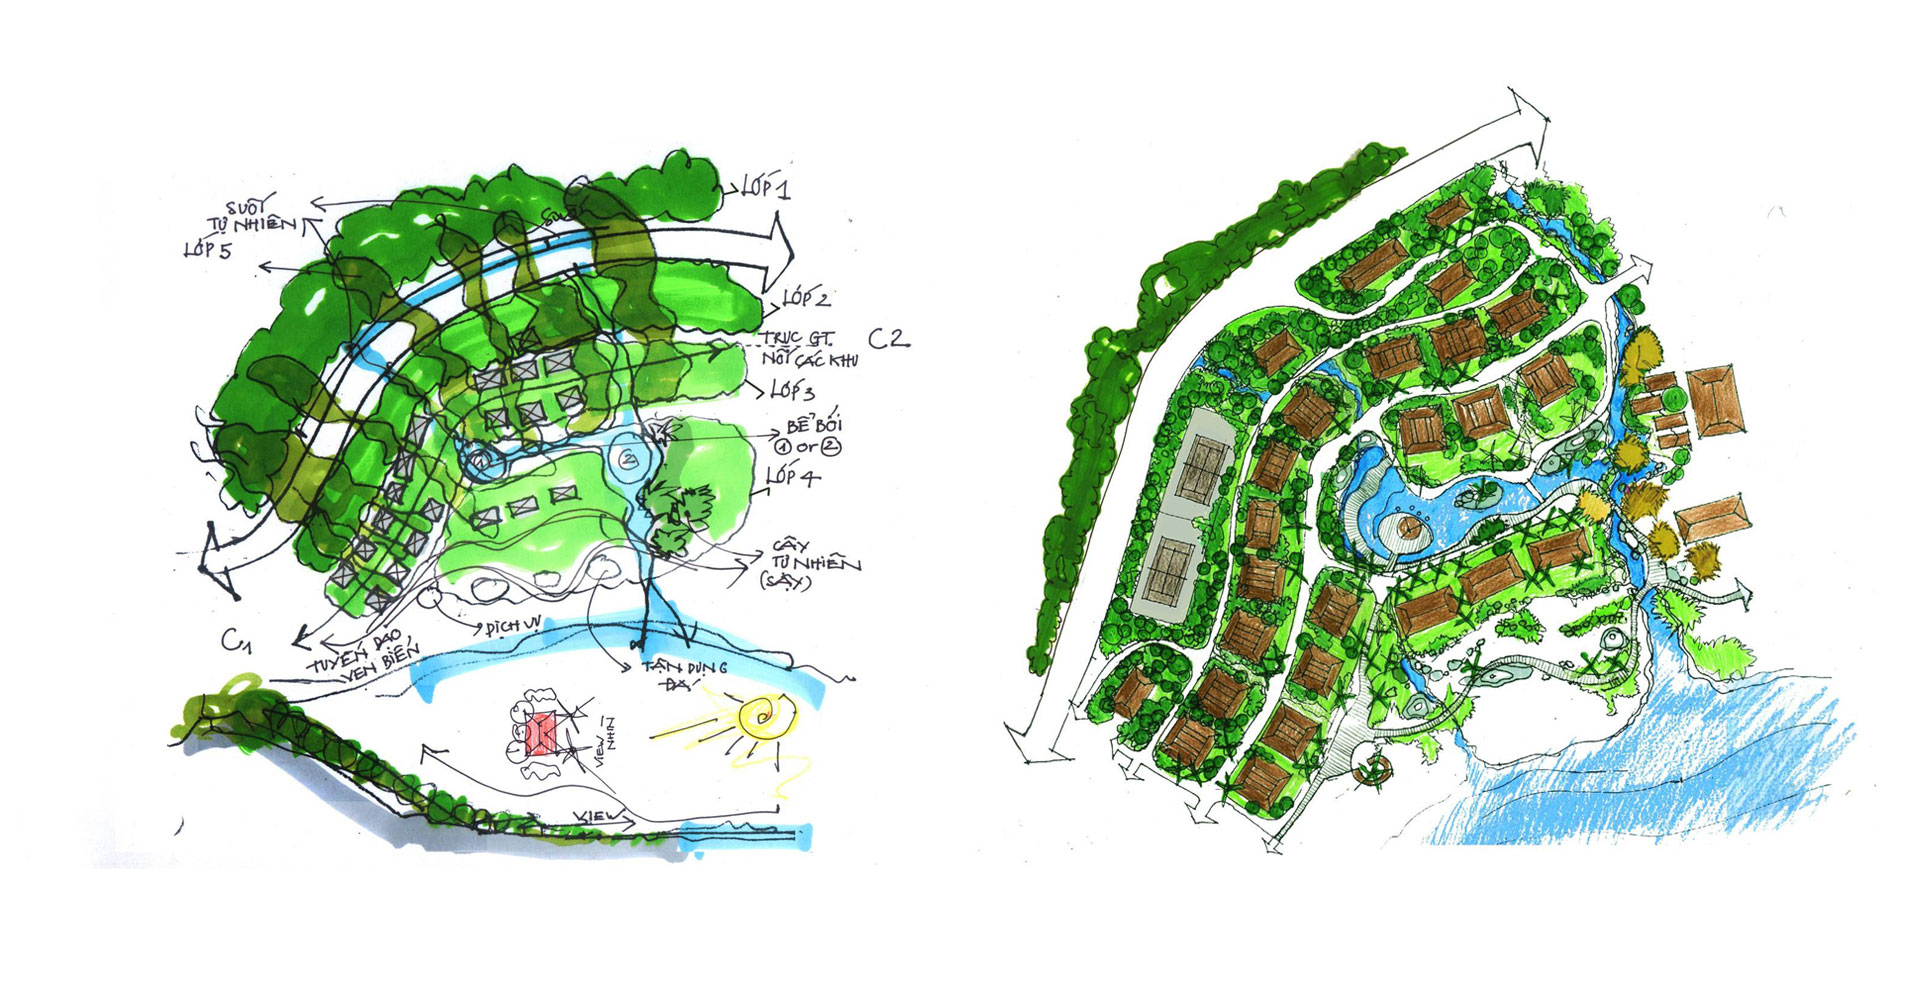 Phối cảnh 1 - Eden Landscape thiết kế cảnh quan Sơn Trà Resort